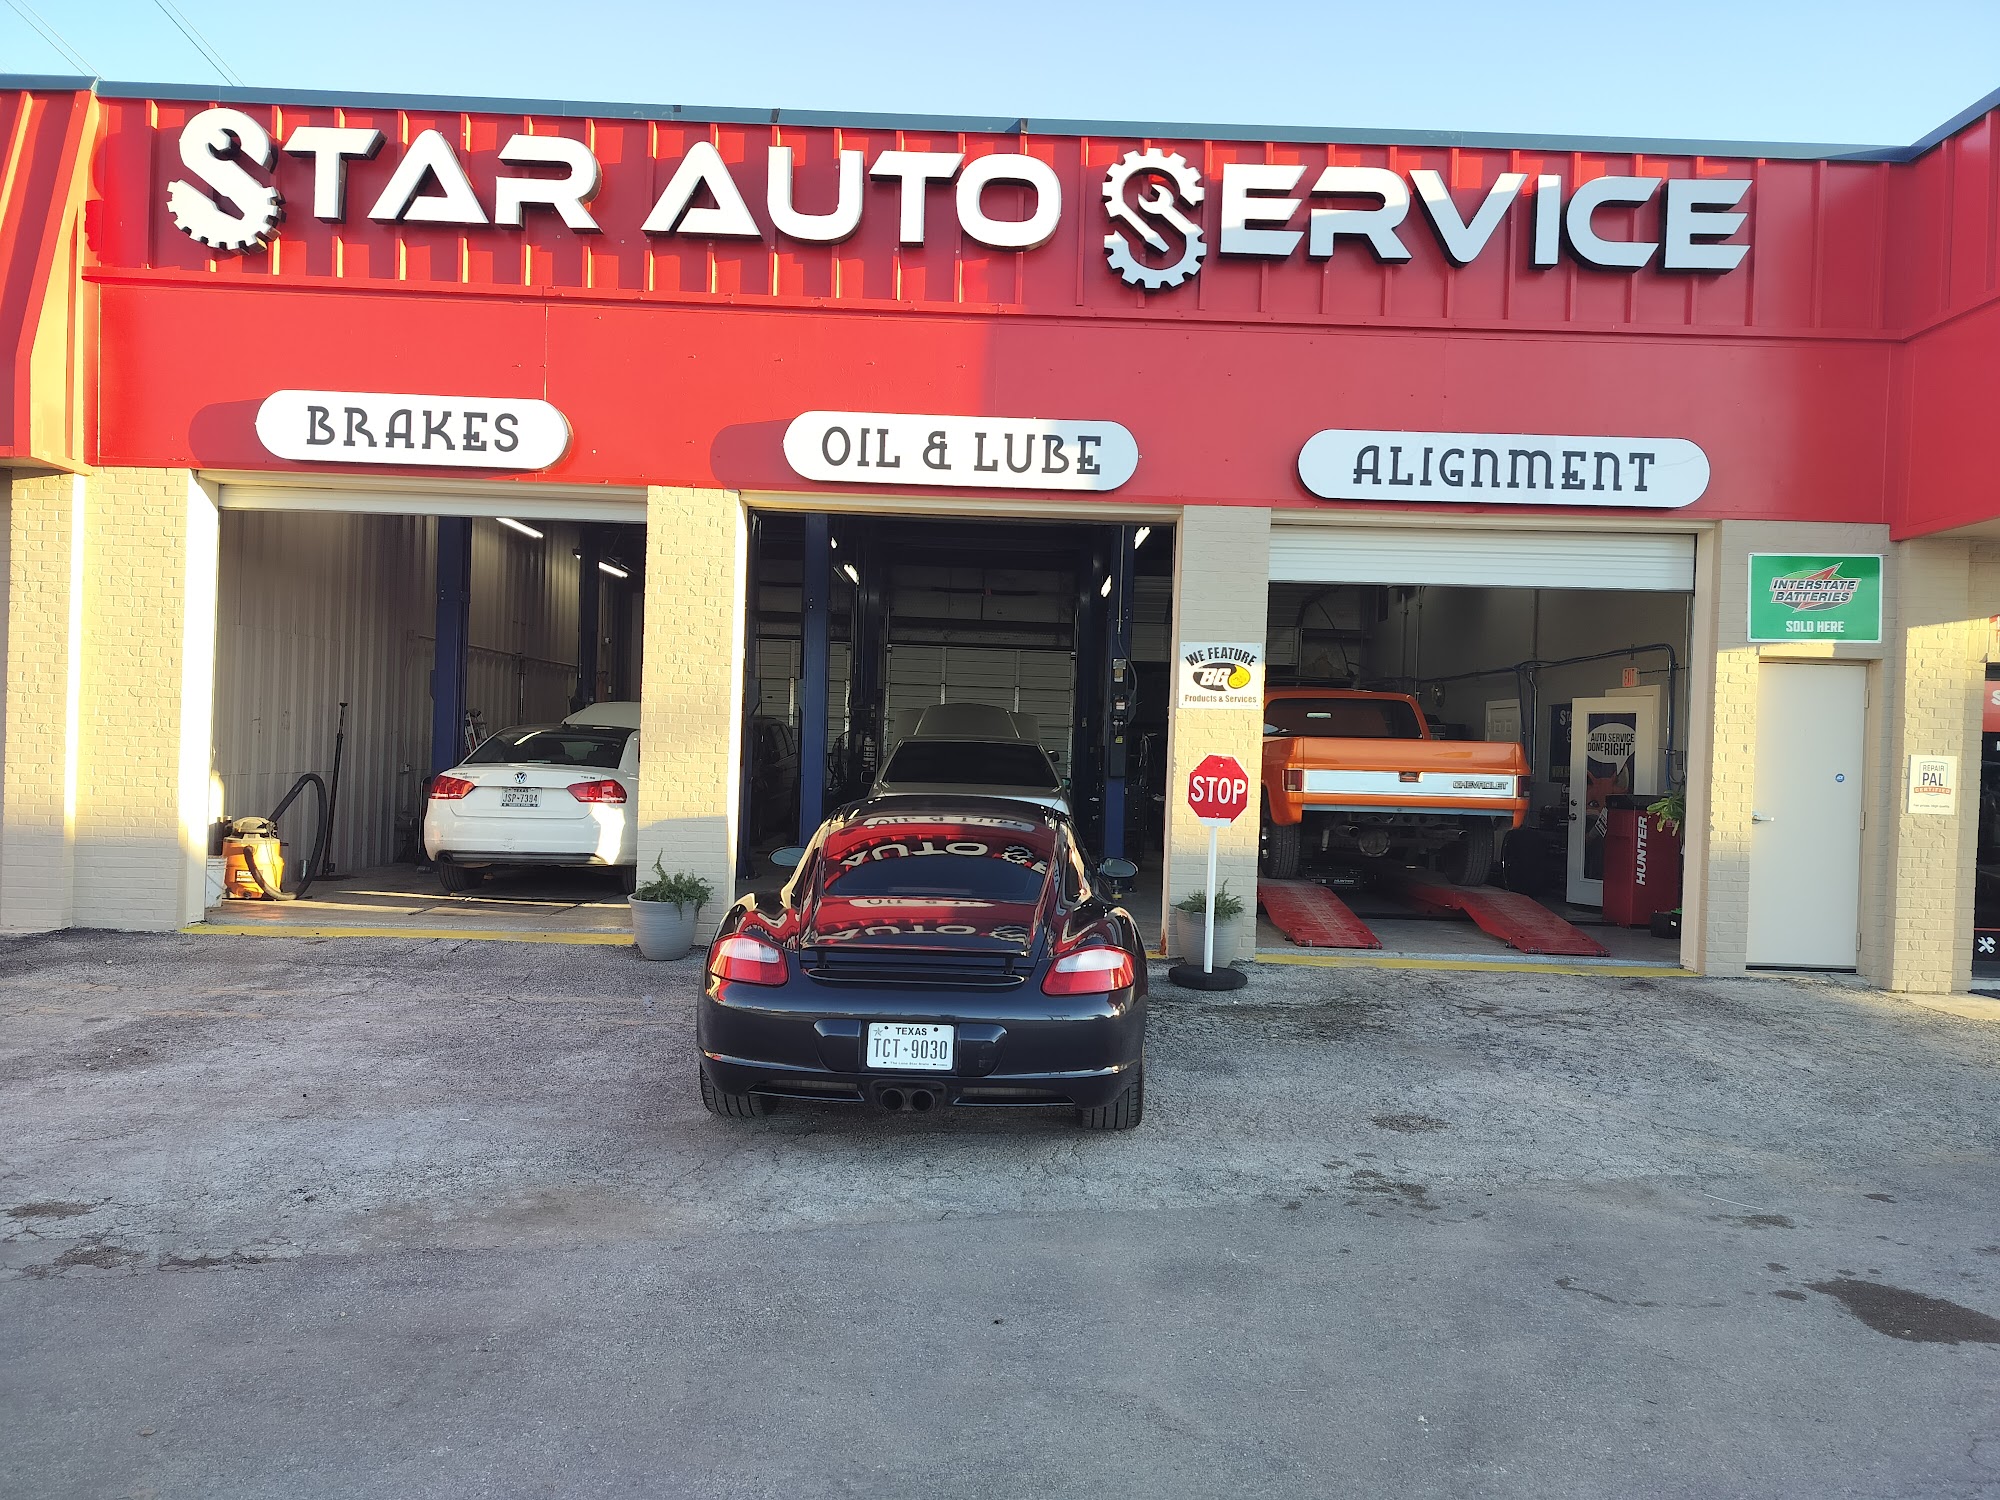 Star Auto Service